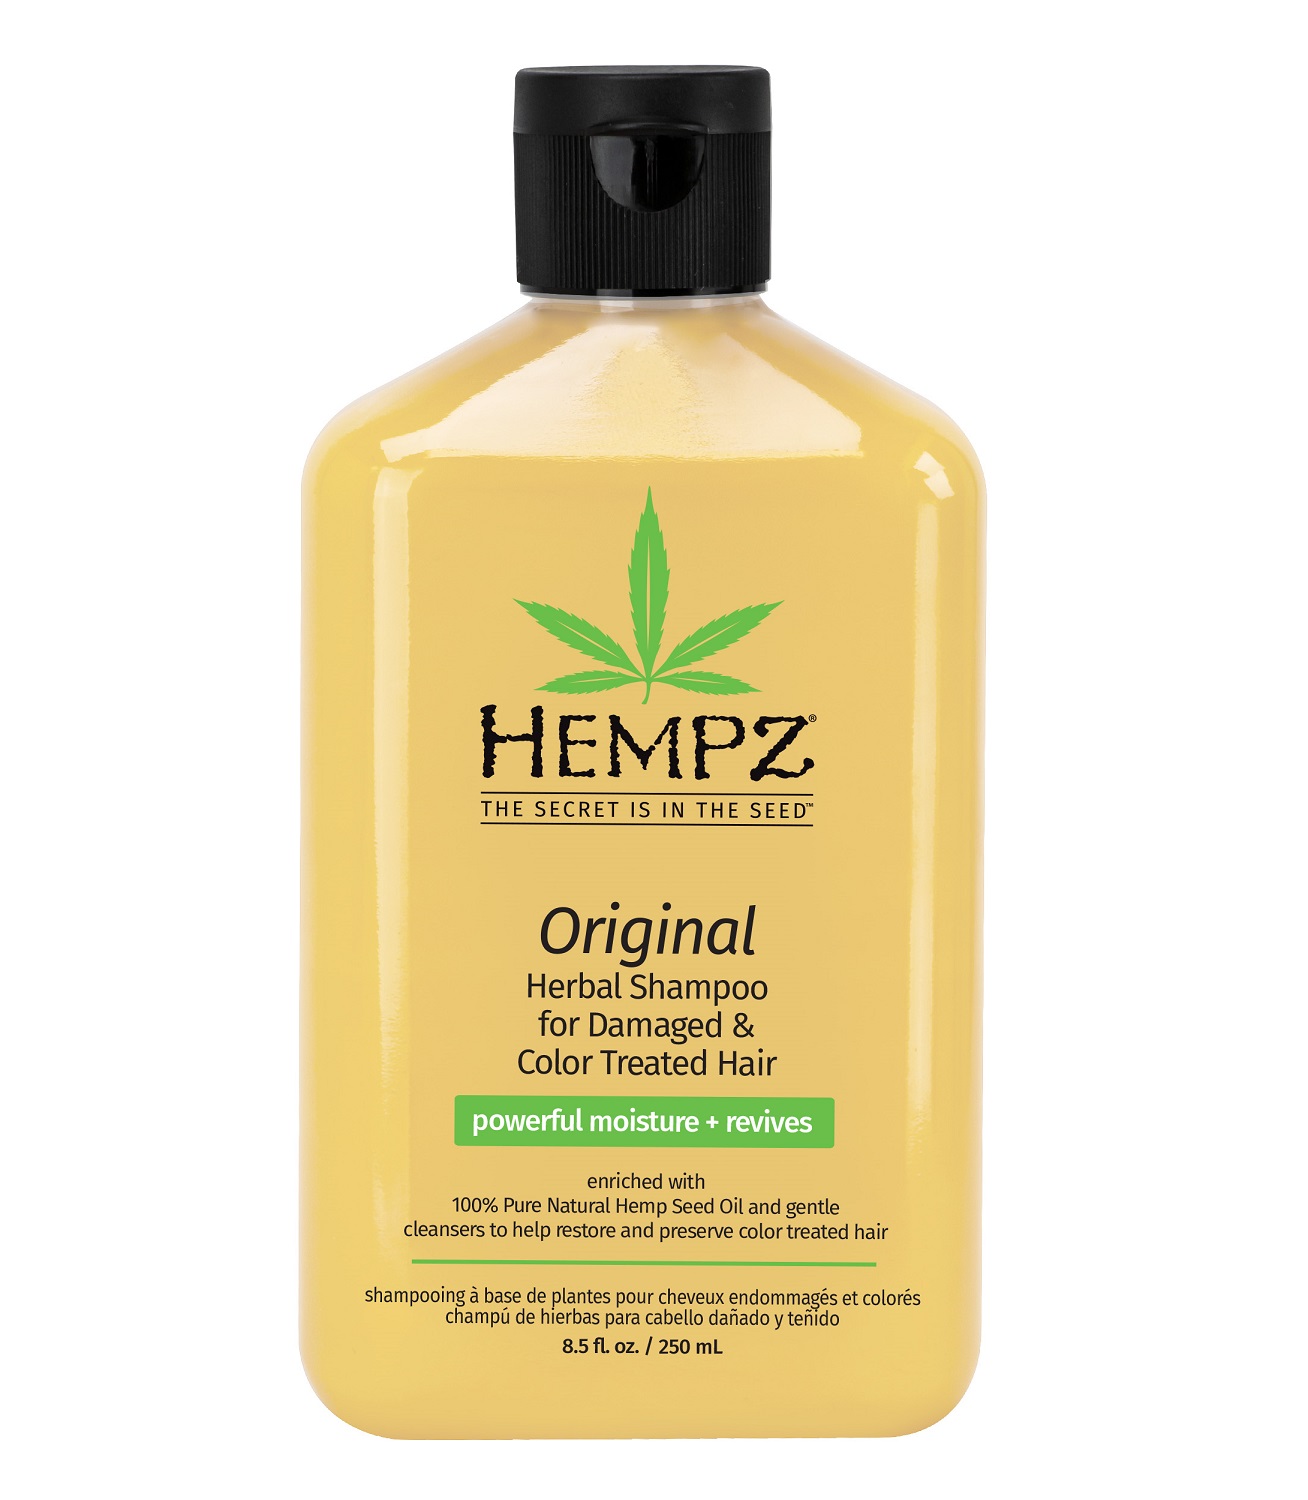 Купить Hempz Растительный шампунь для поврежденных окрашенных волос Original Herbal Shampoo For Damaged & Color Treated Hair, 250 мл (Hempz, Оригинальная коллекция), США